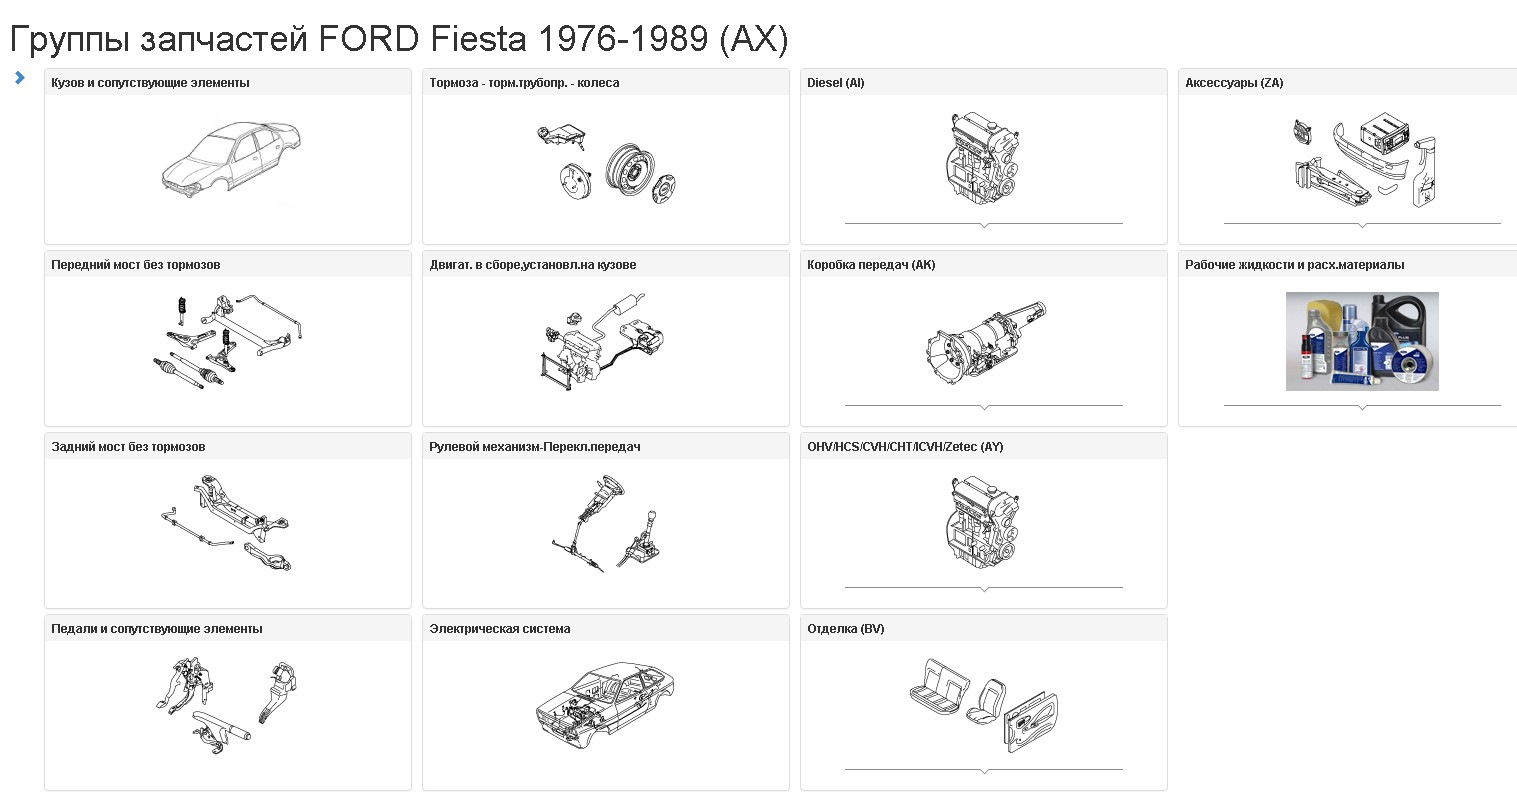 Каталог форд фокус 2. Форд фокус 1 каталог схемой. Форд фокус 1 каталог запчастей тормоза. Номера запчастей по каталогу Форд фокус 2 1.6. Ford Fusion 2008 запчасти схема.